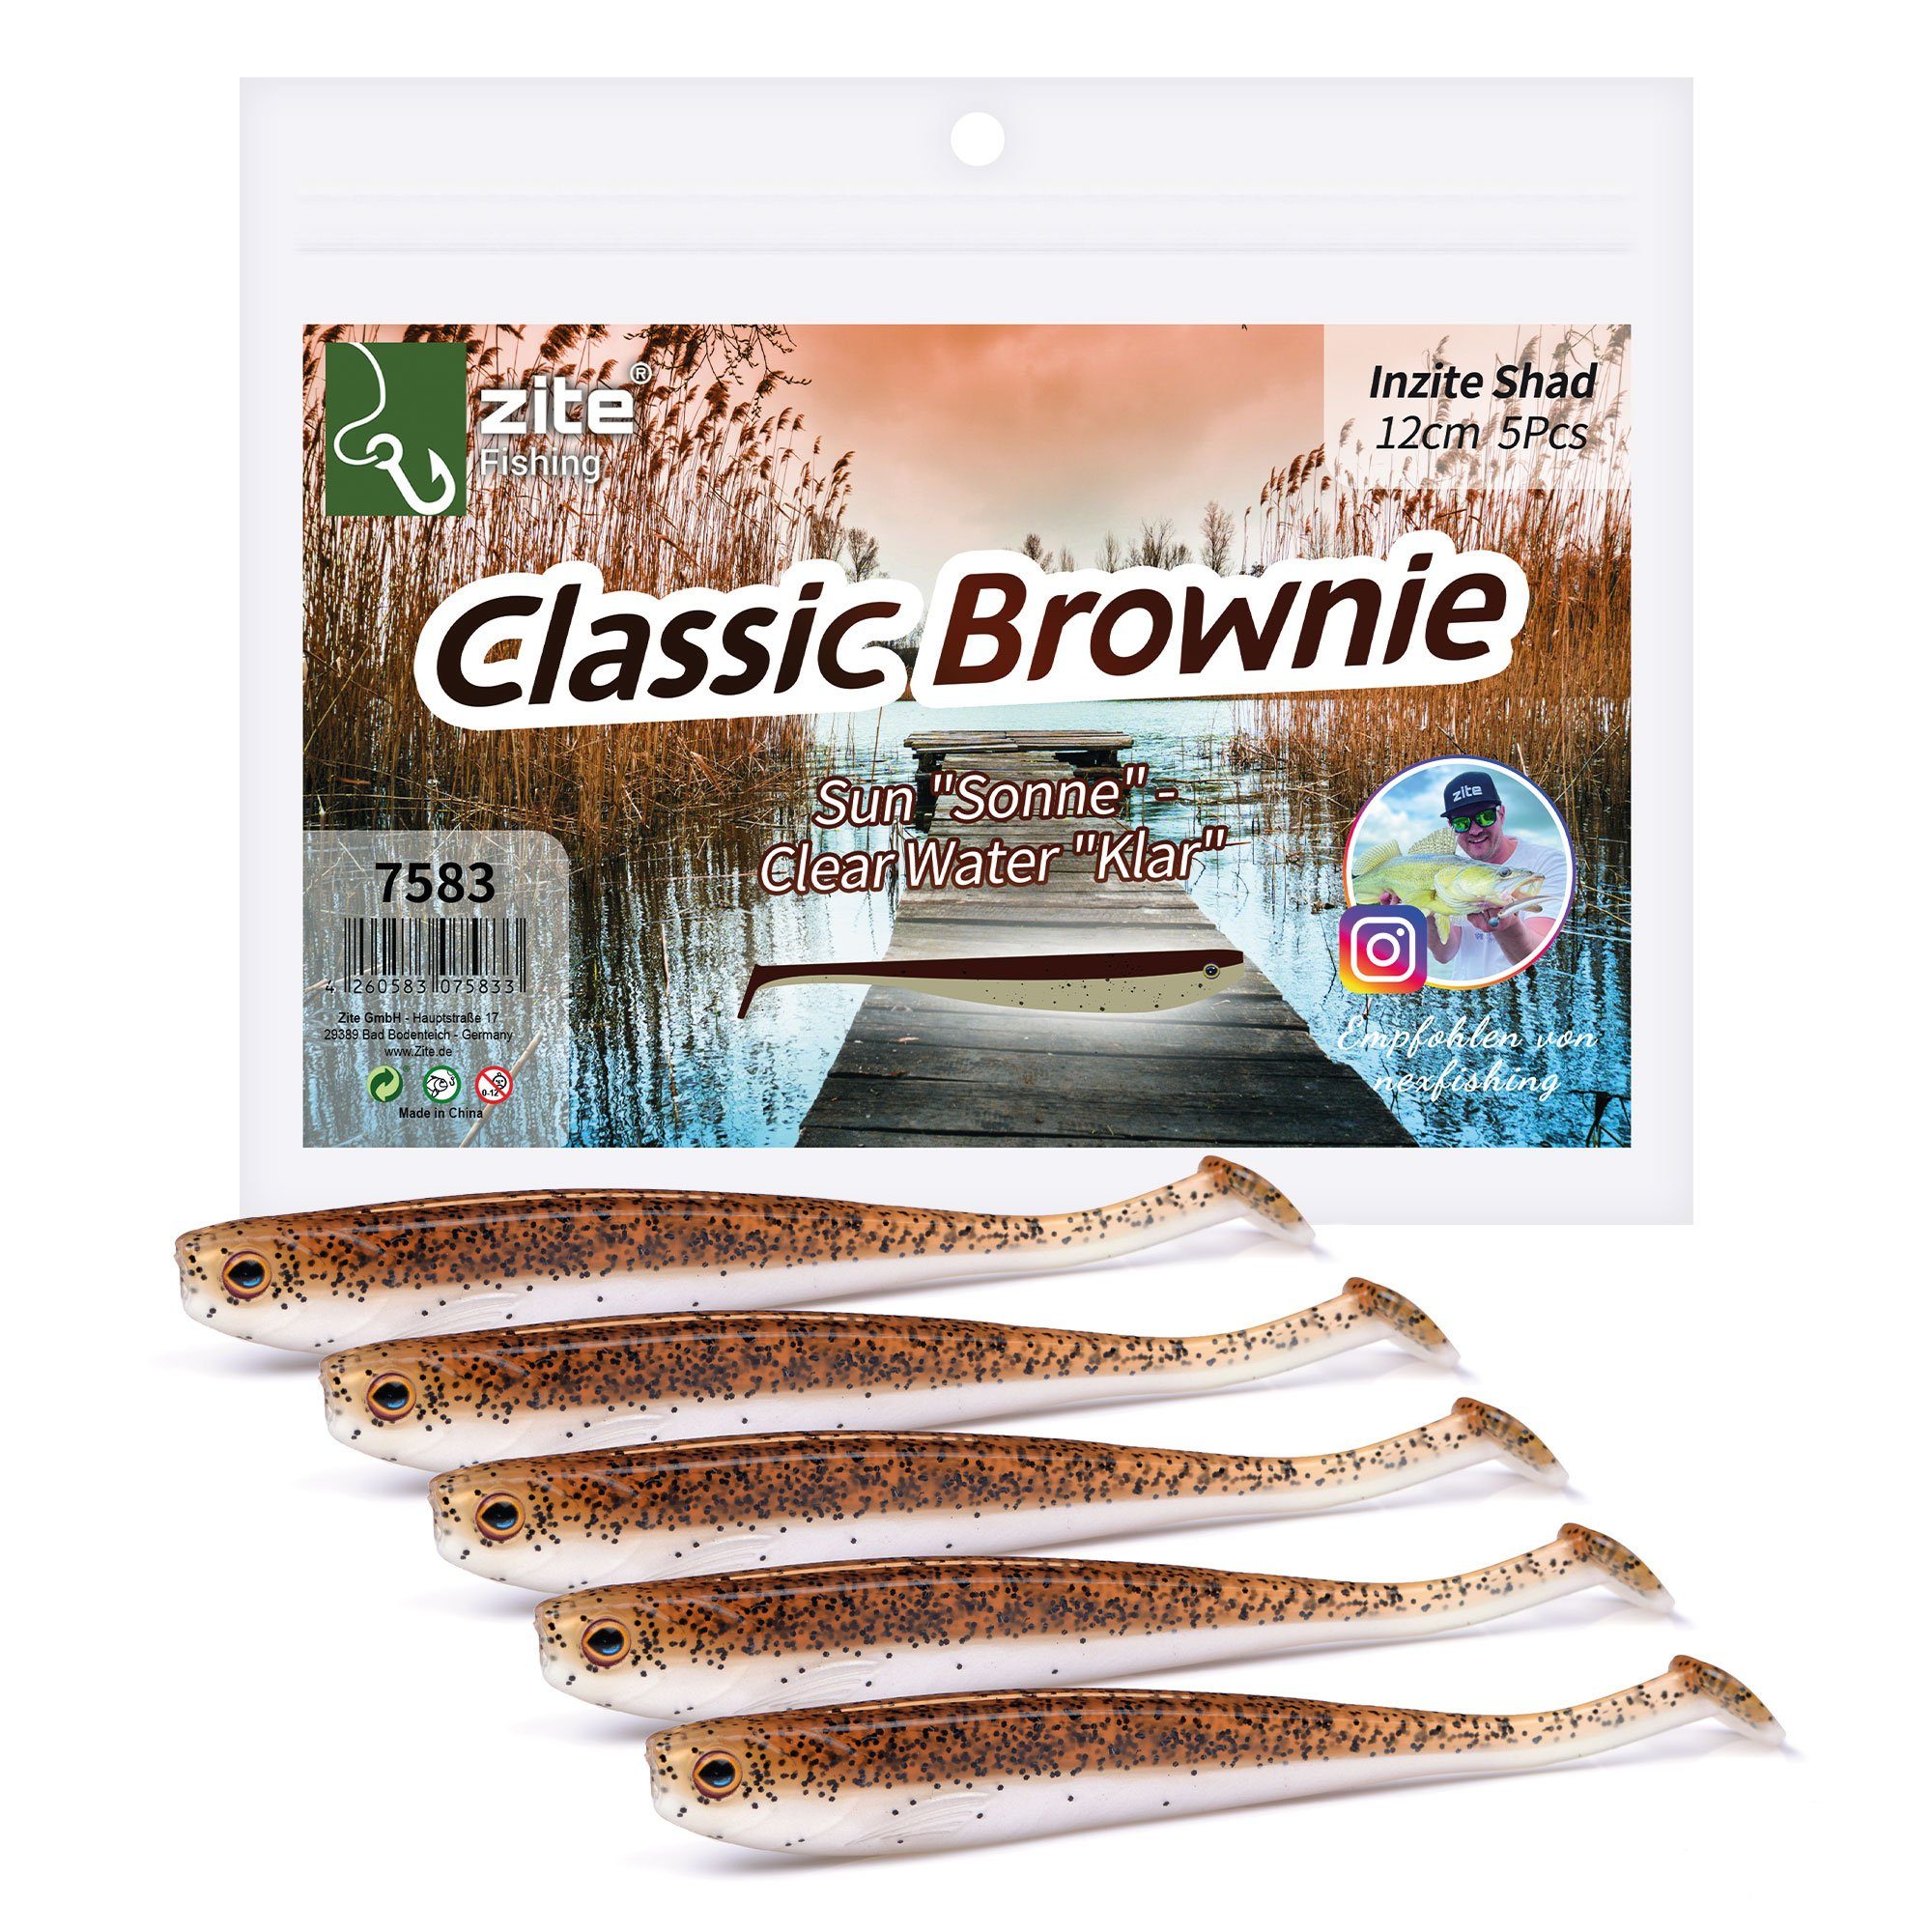 Zander Gummifisch 12cm - Stück Inzite 5 Shad Kunstköder Zite Classic Brownie